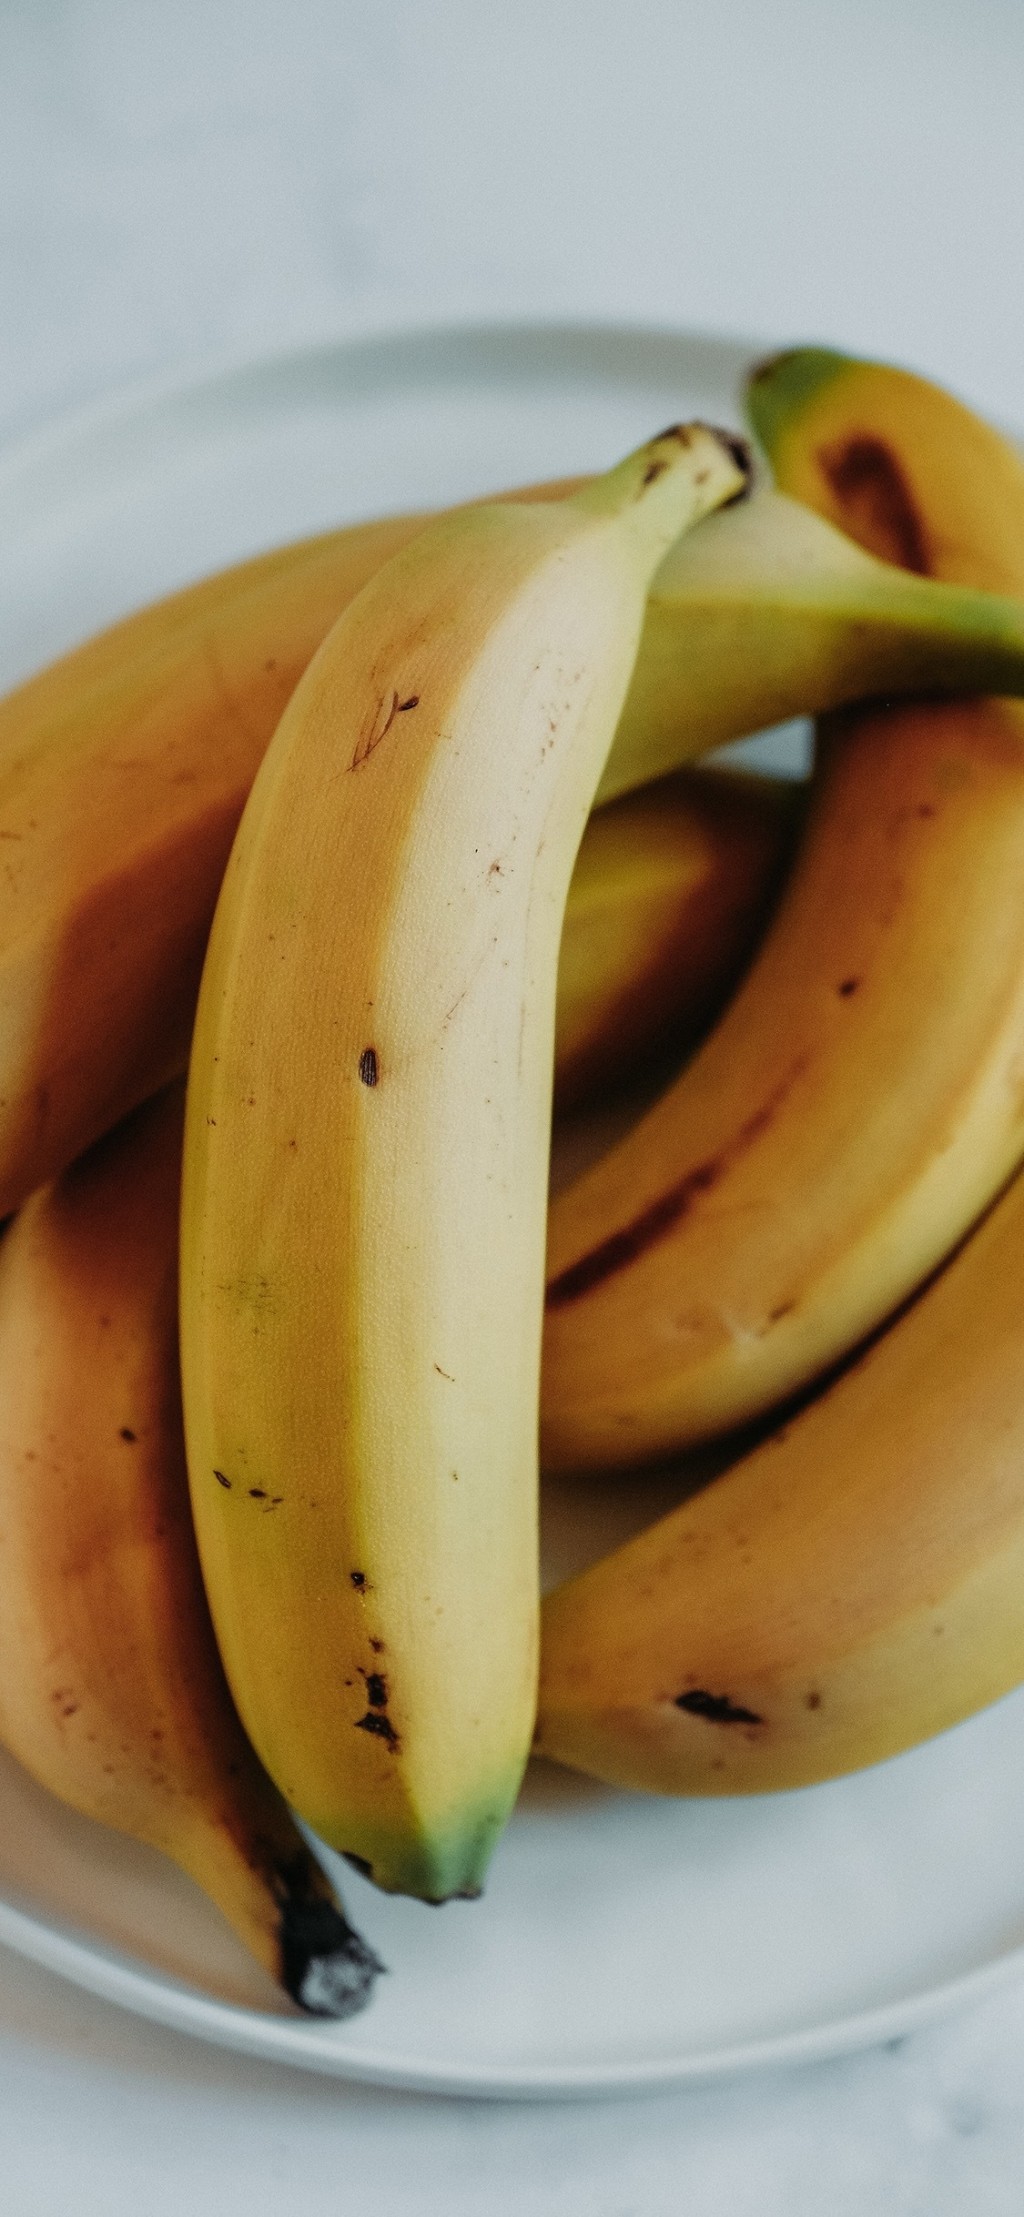 香蕉简约风水果手机壁纸